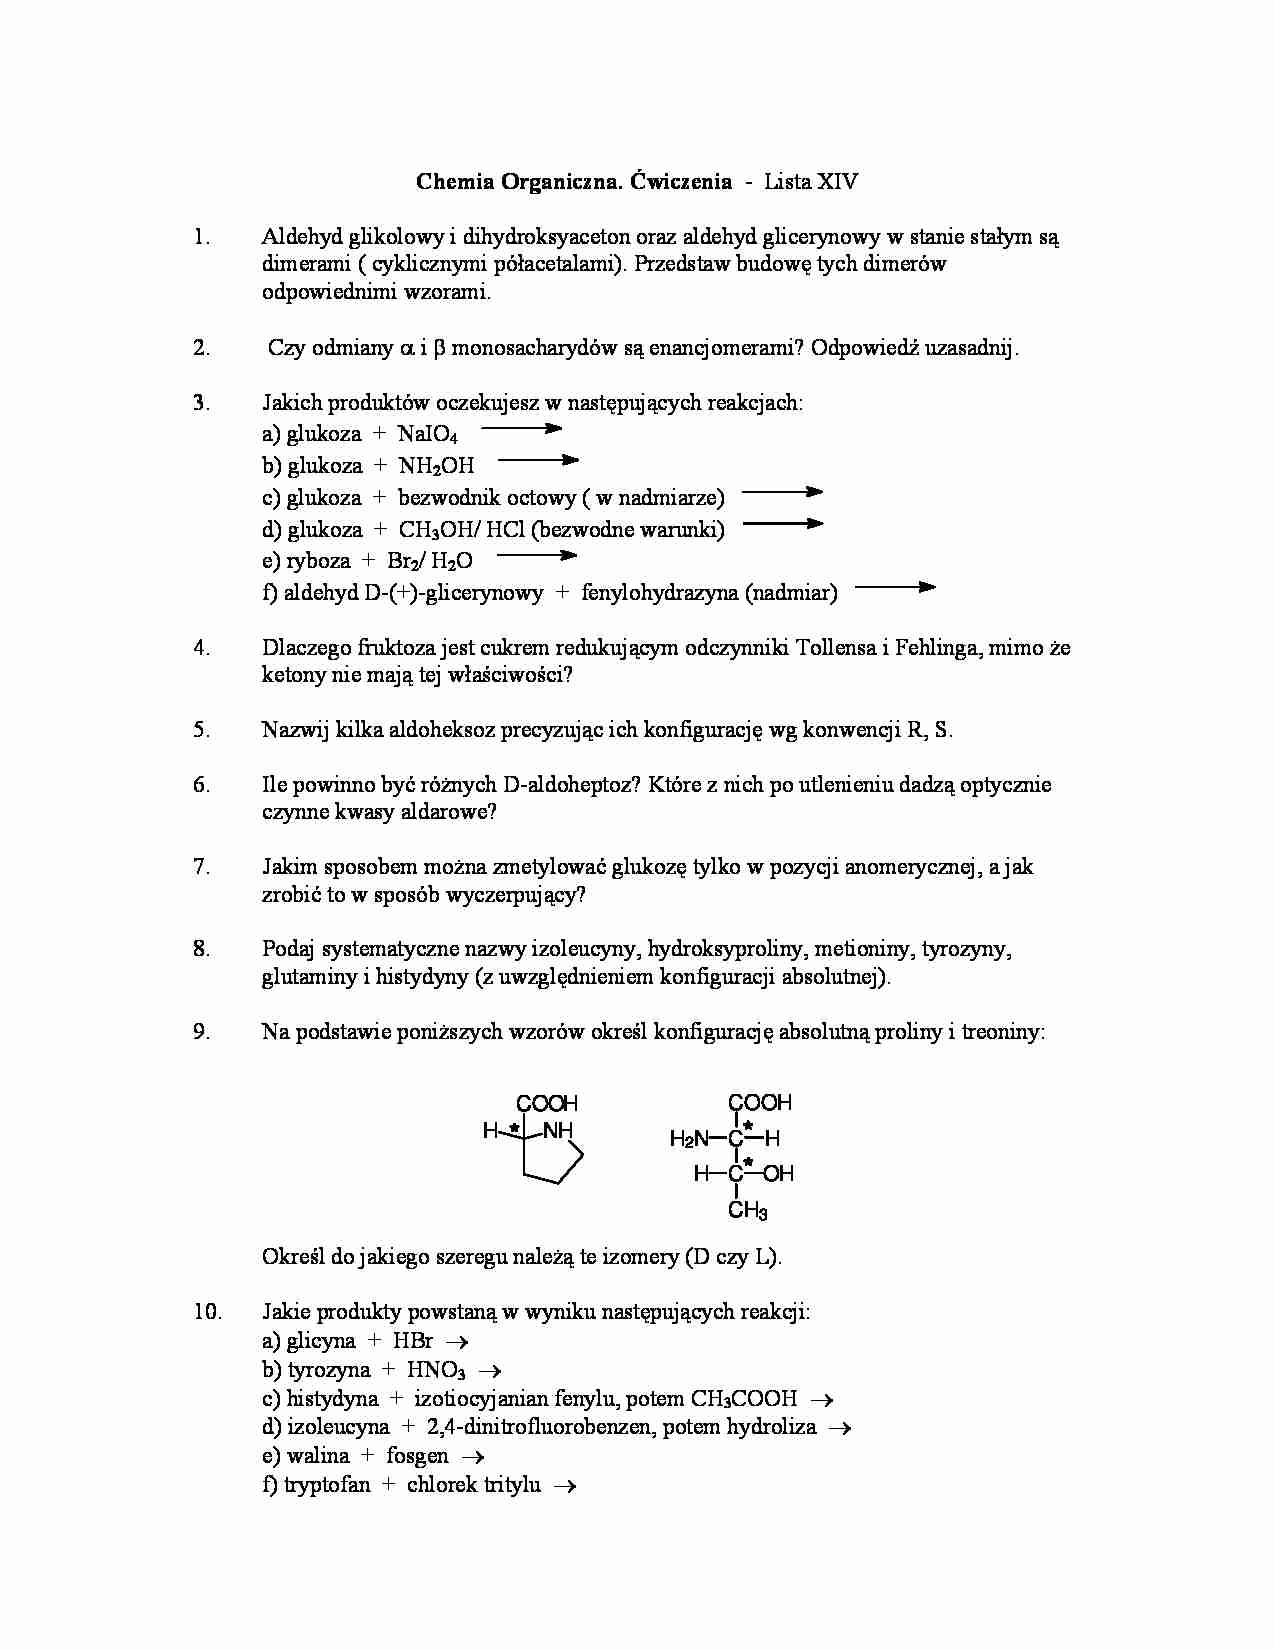 Chemia organiczna - ćwiczenia, lista XIV - strona 1